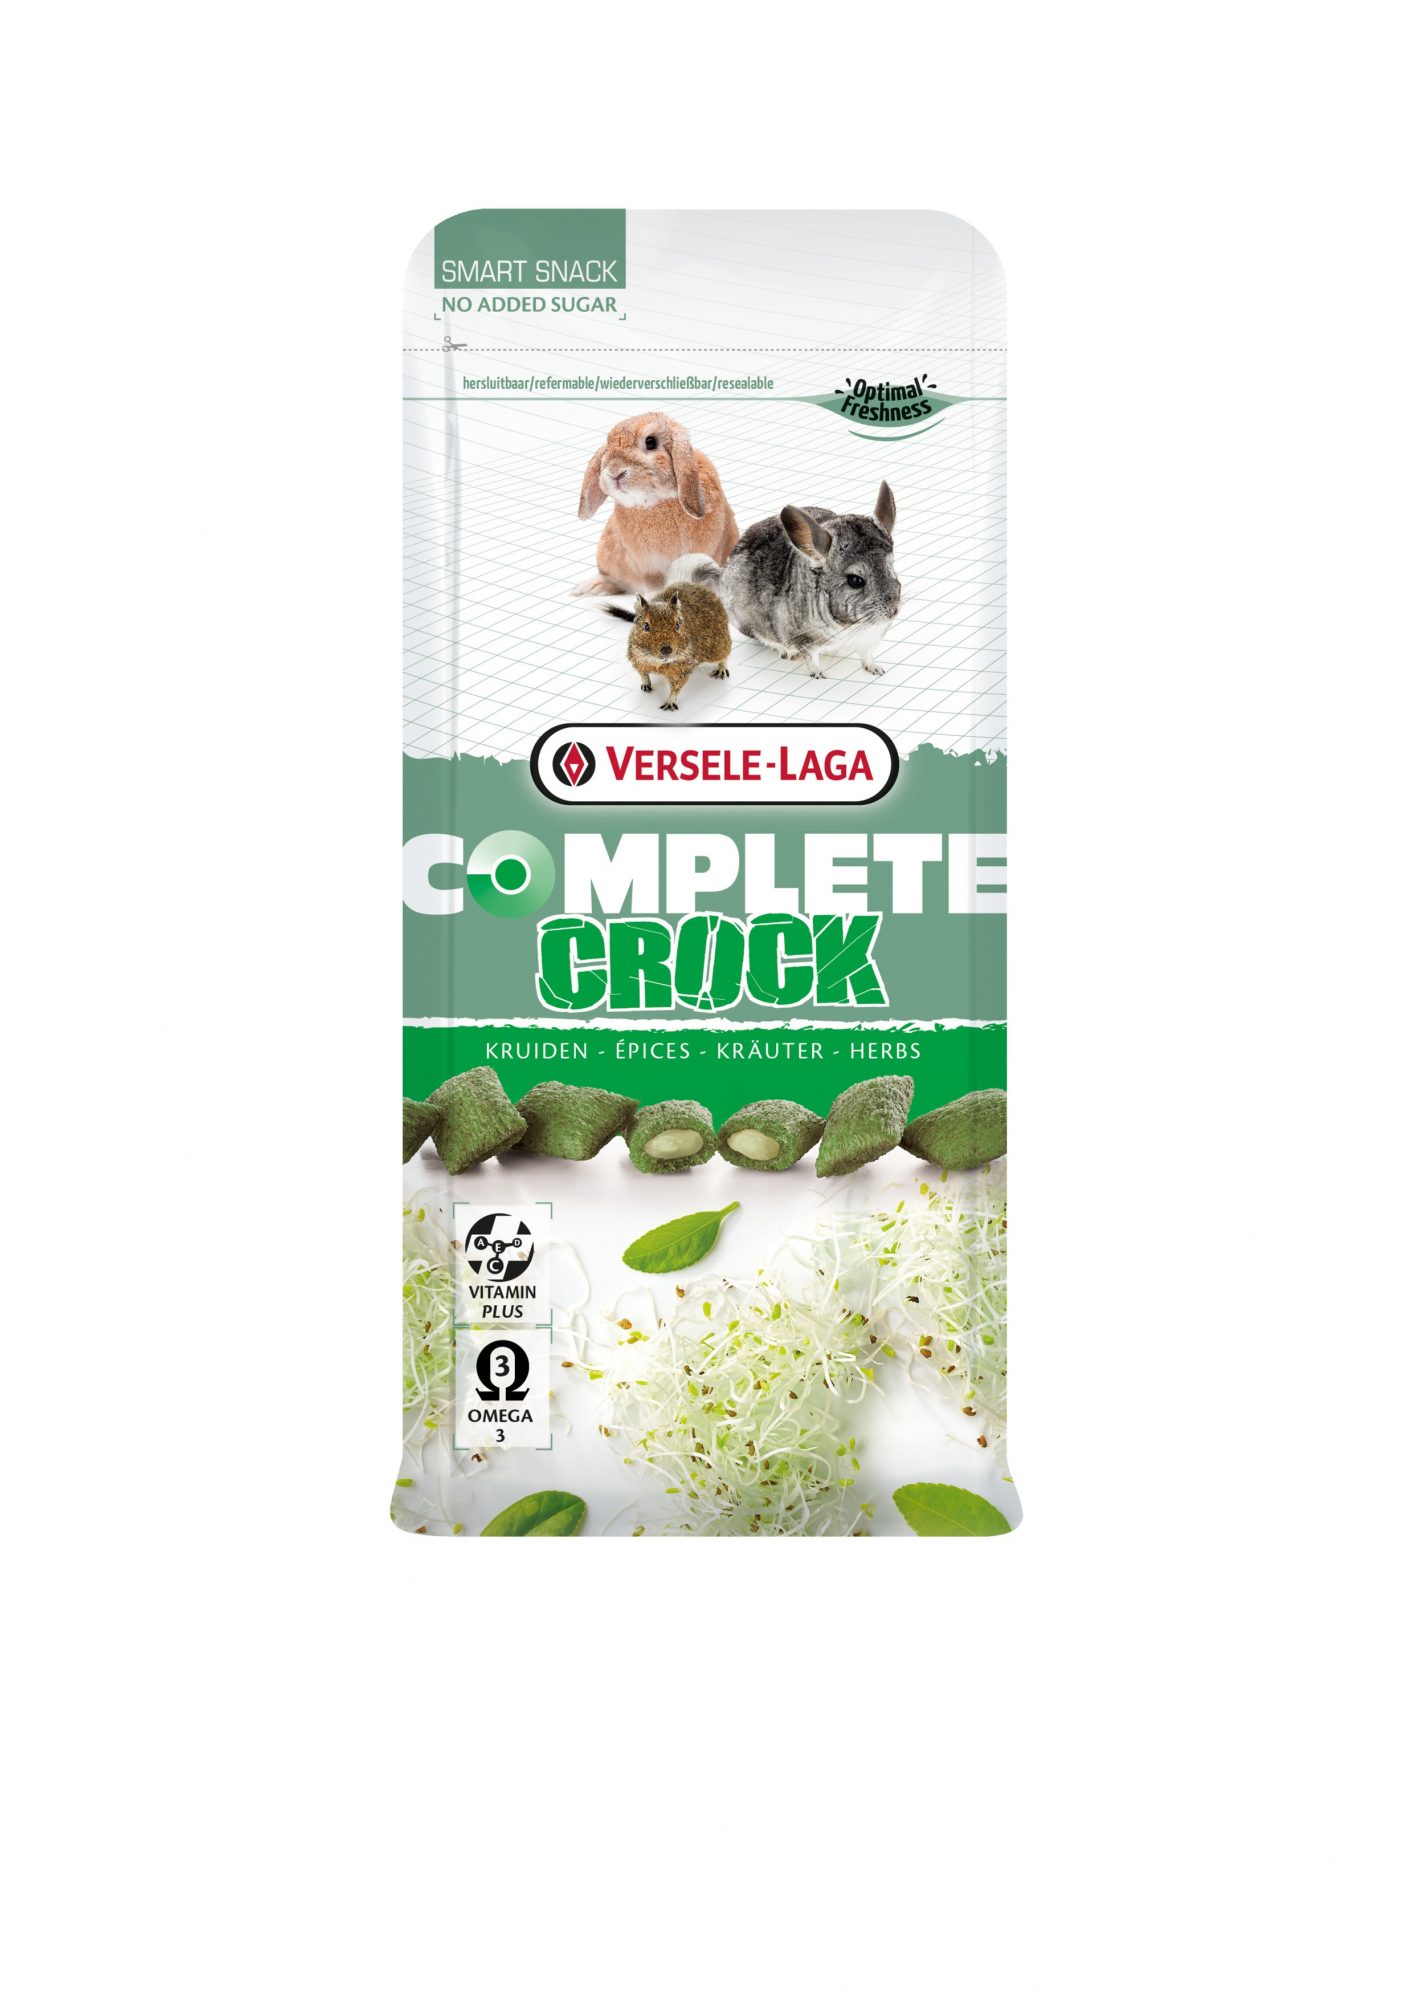 Crock Complete Herbs für Kaninchen und Nagetiere